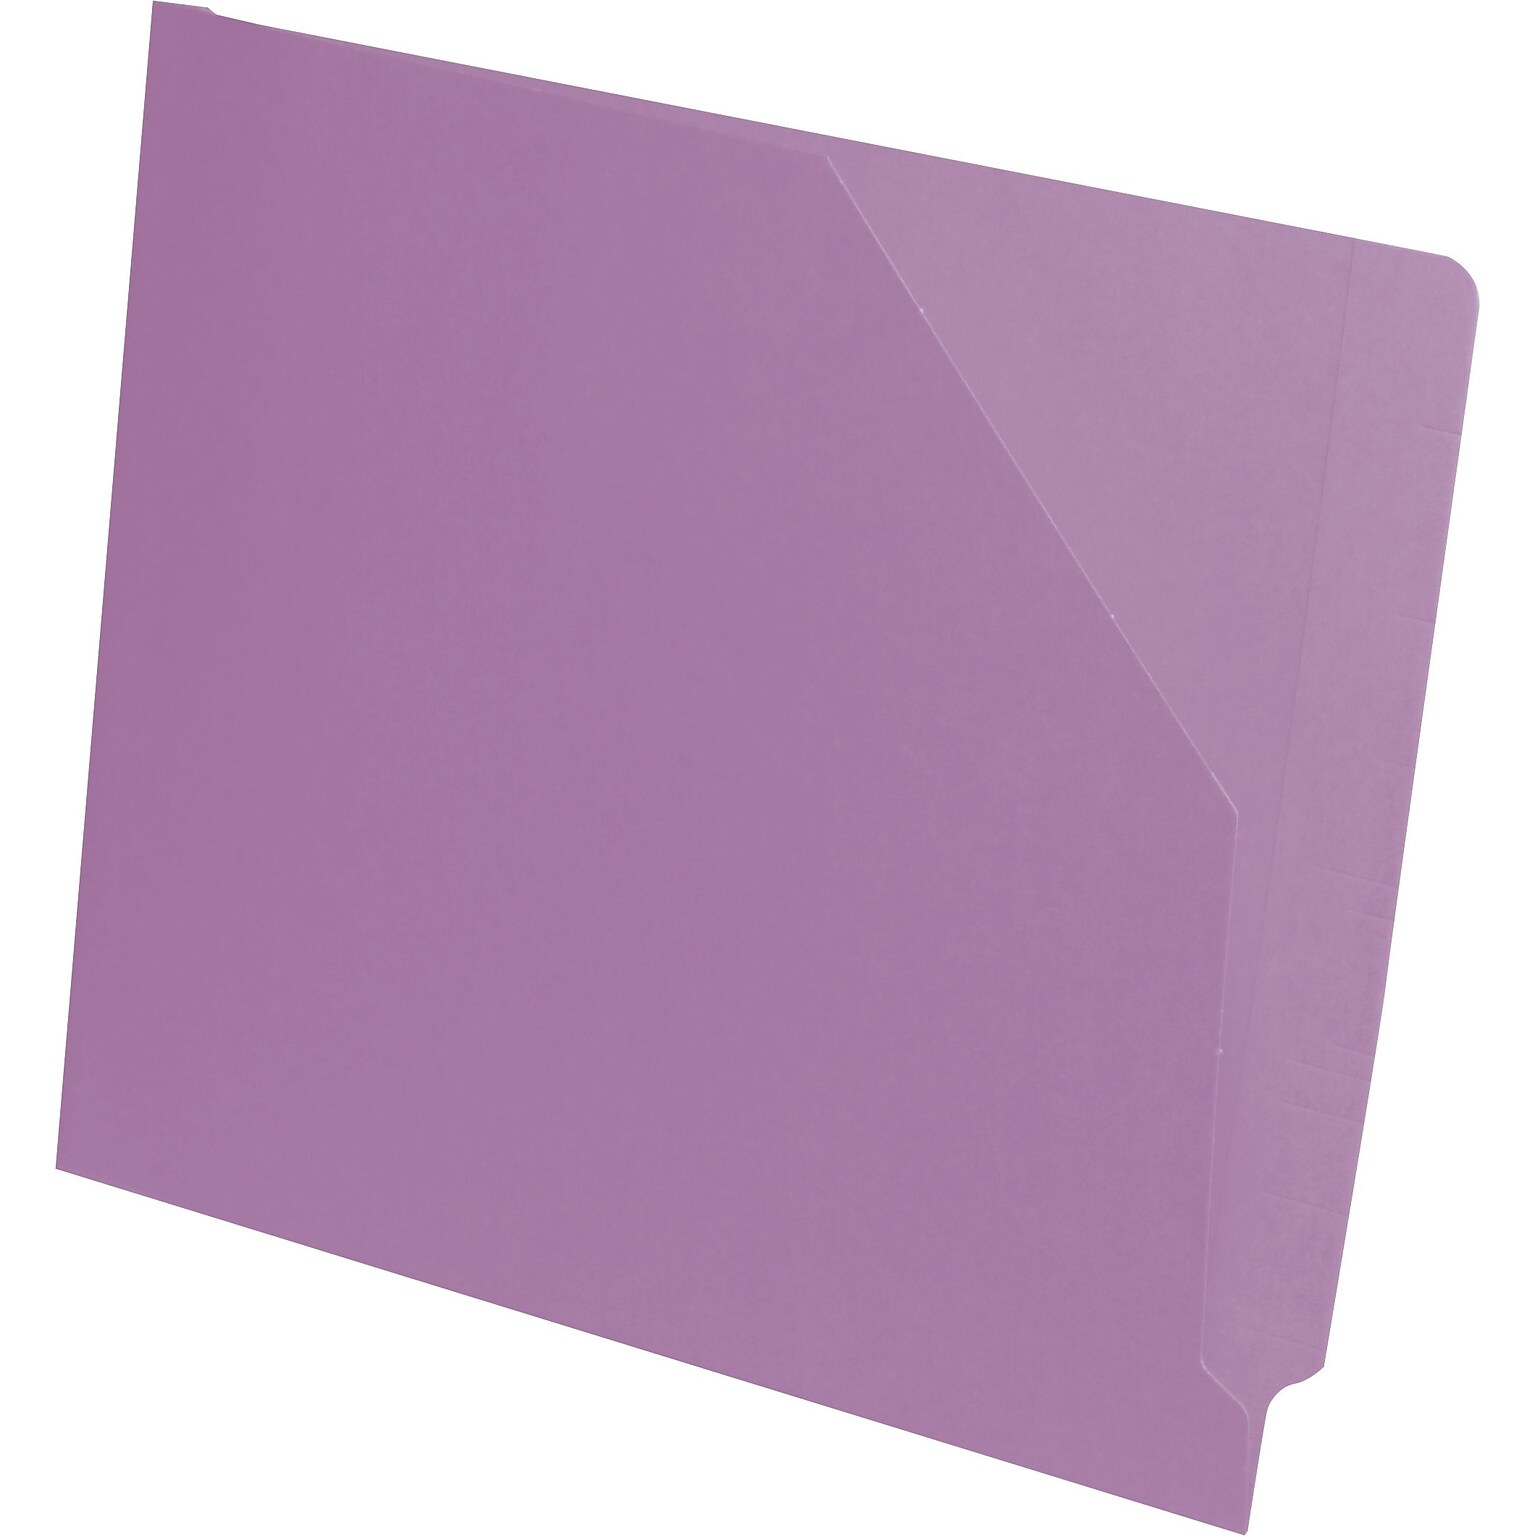 Medical Arts Press End-Tab Slant File Pockets, Letter Size, Lavender, 100/Box (51439LV)